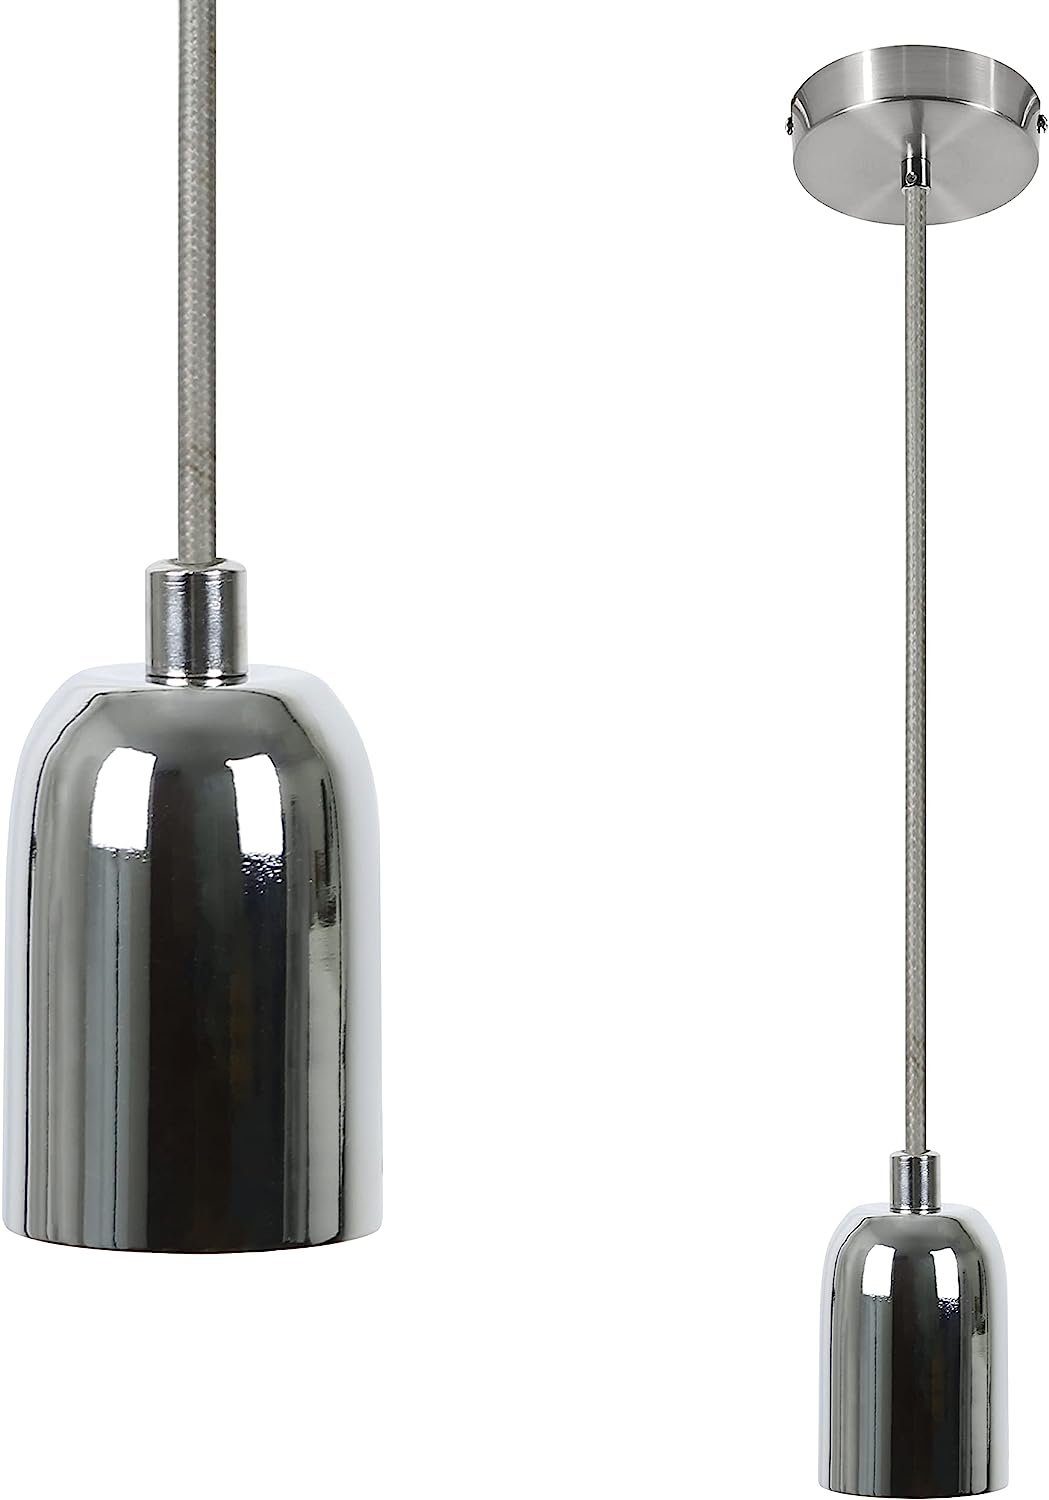 Lampenfassung Silber Nettlife mit 1.3M Hängefassung Vintage Schnurpendel E27 Kabel Edison